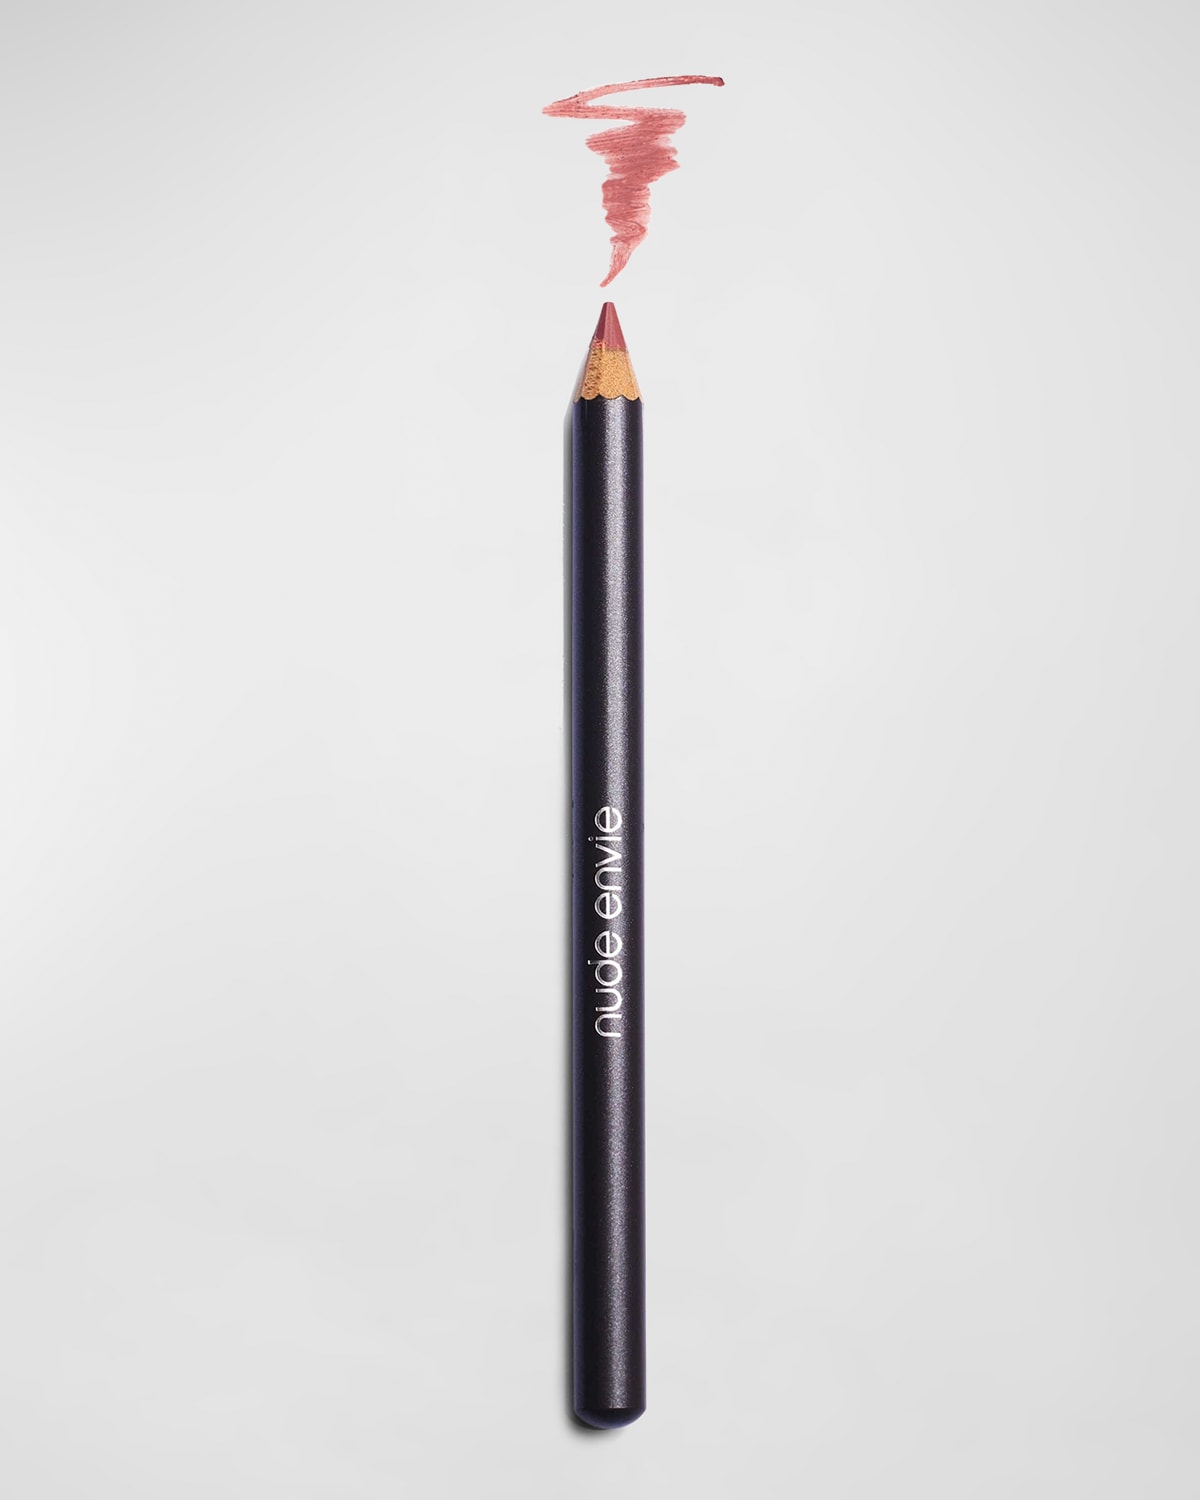 Nude Envie Lip Liner Pencil In Classy